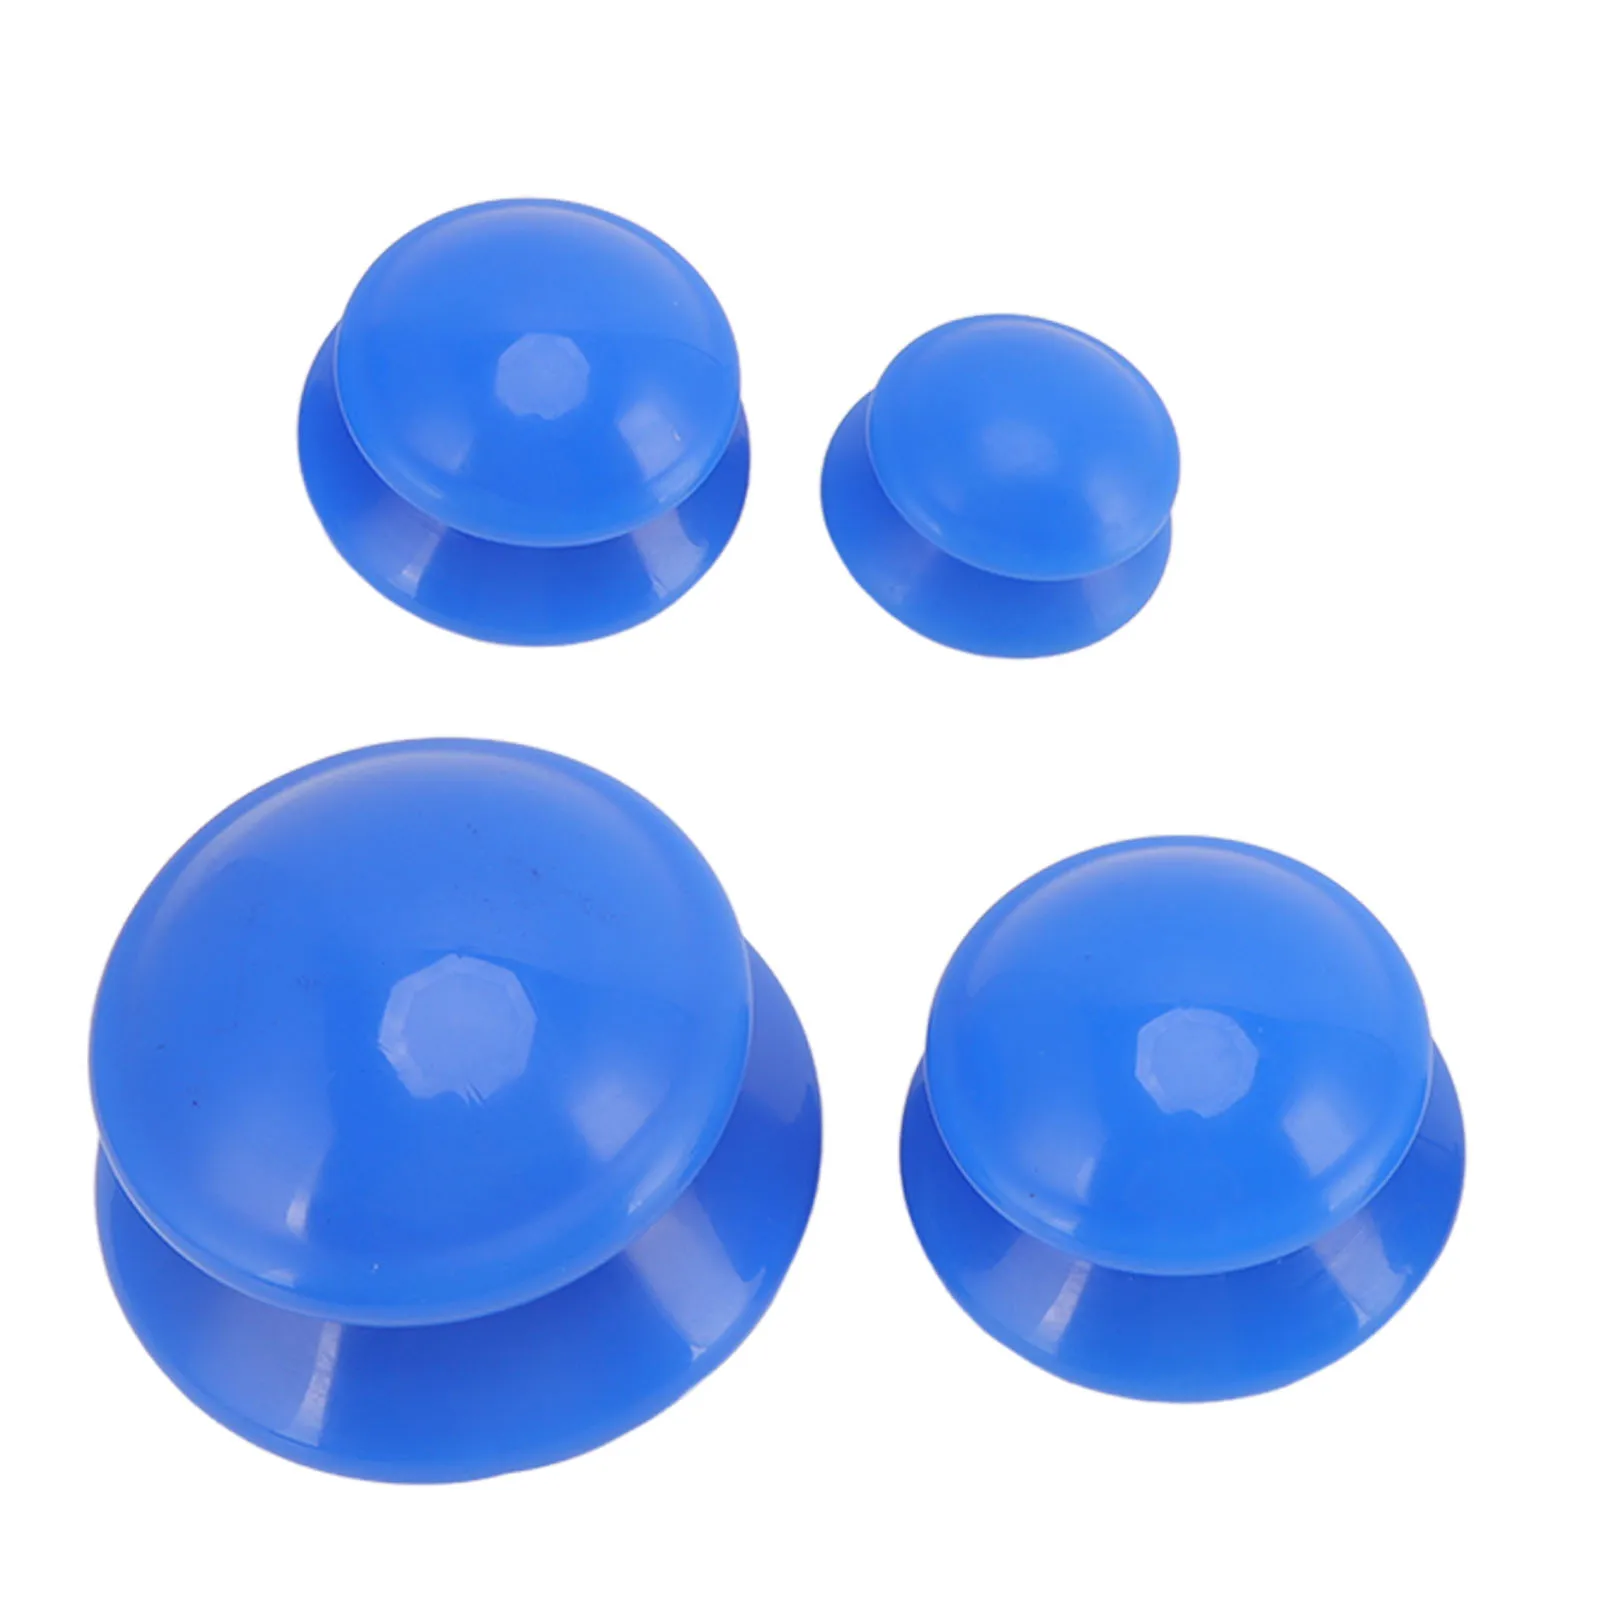 Набор для силиконовой баночной терапии 4 размера, вакуумные баночки с отрицательным давлением, наборы для профессионального студийного домашнего использования, Синяя Яркая поверхность